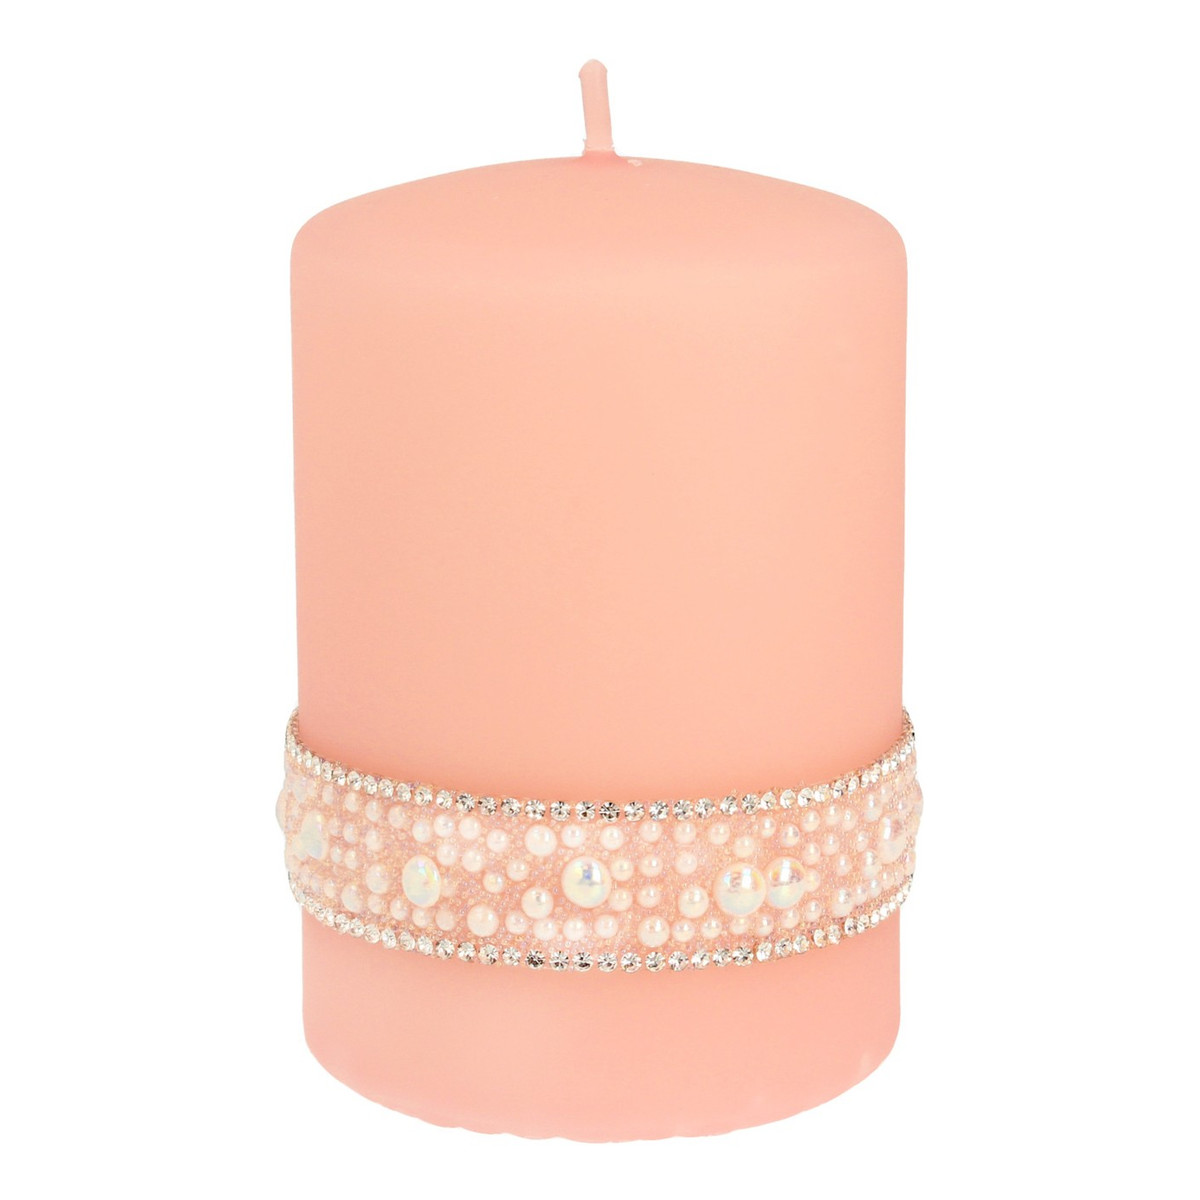 Artman Candles Świeca ozdobna Crystal Pearl rose gold - walec mały